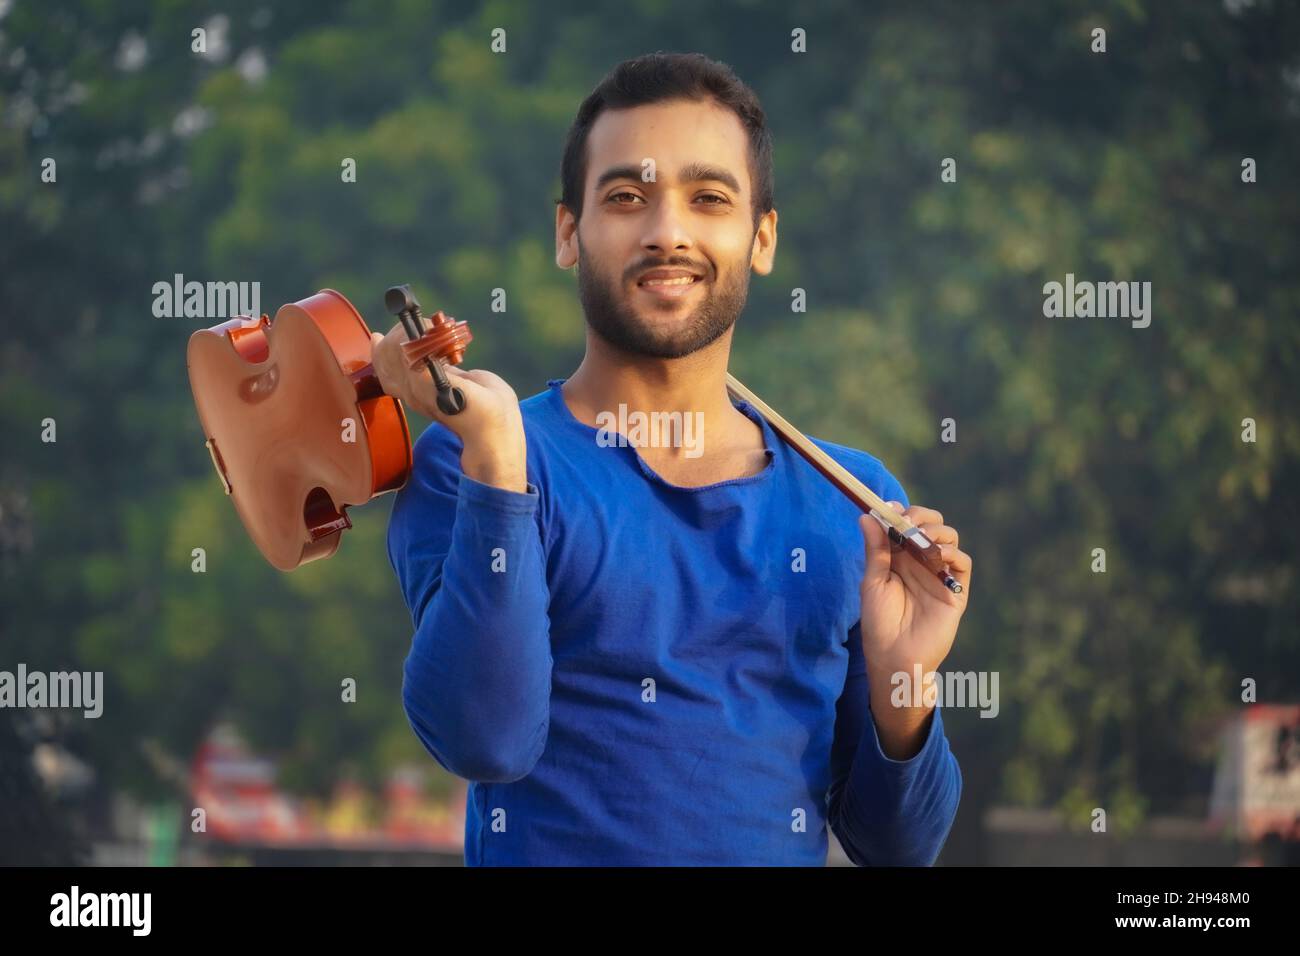 Immagini del giocatore di violino concetto di musica e tono musicale. Immagini dell'uomo musicista Foto Stock